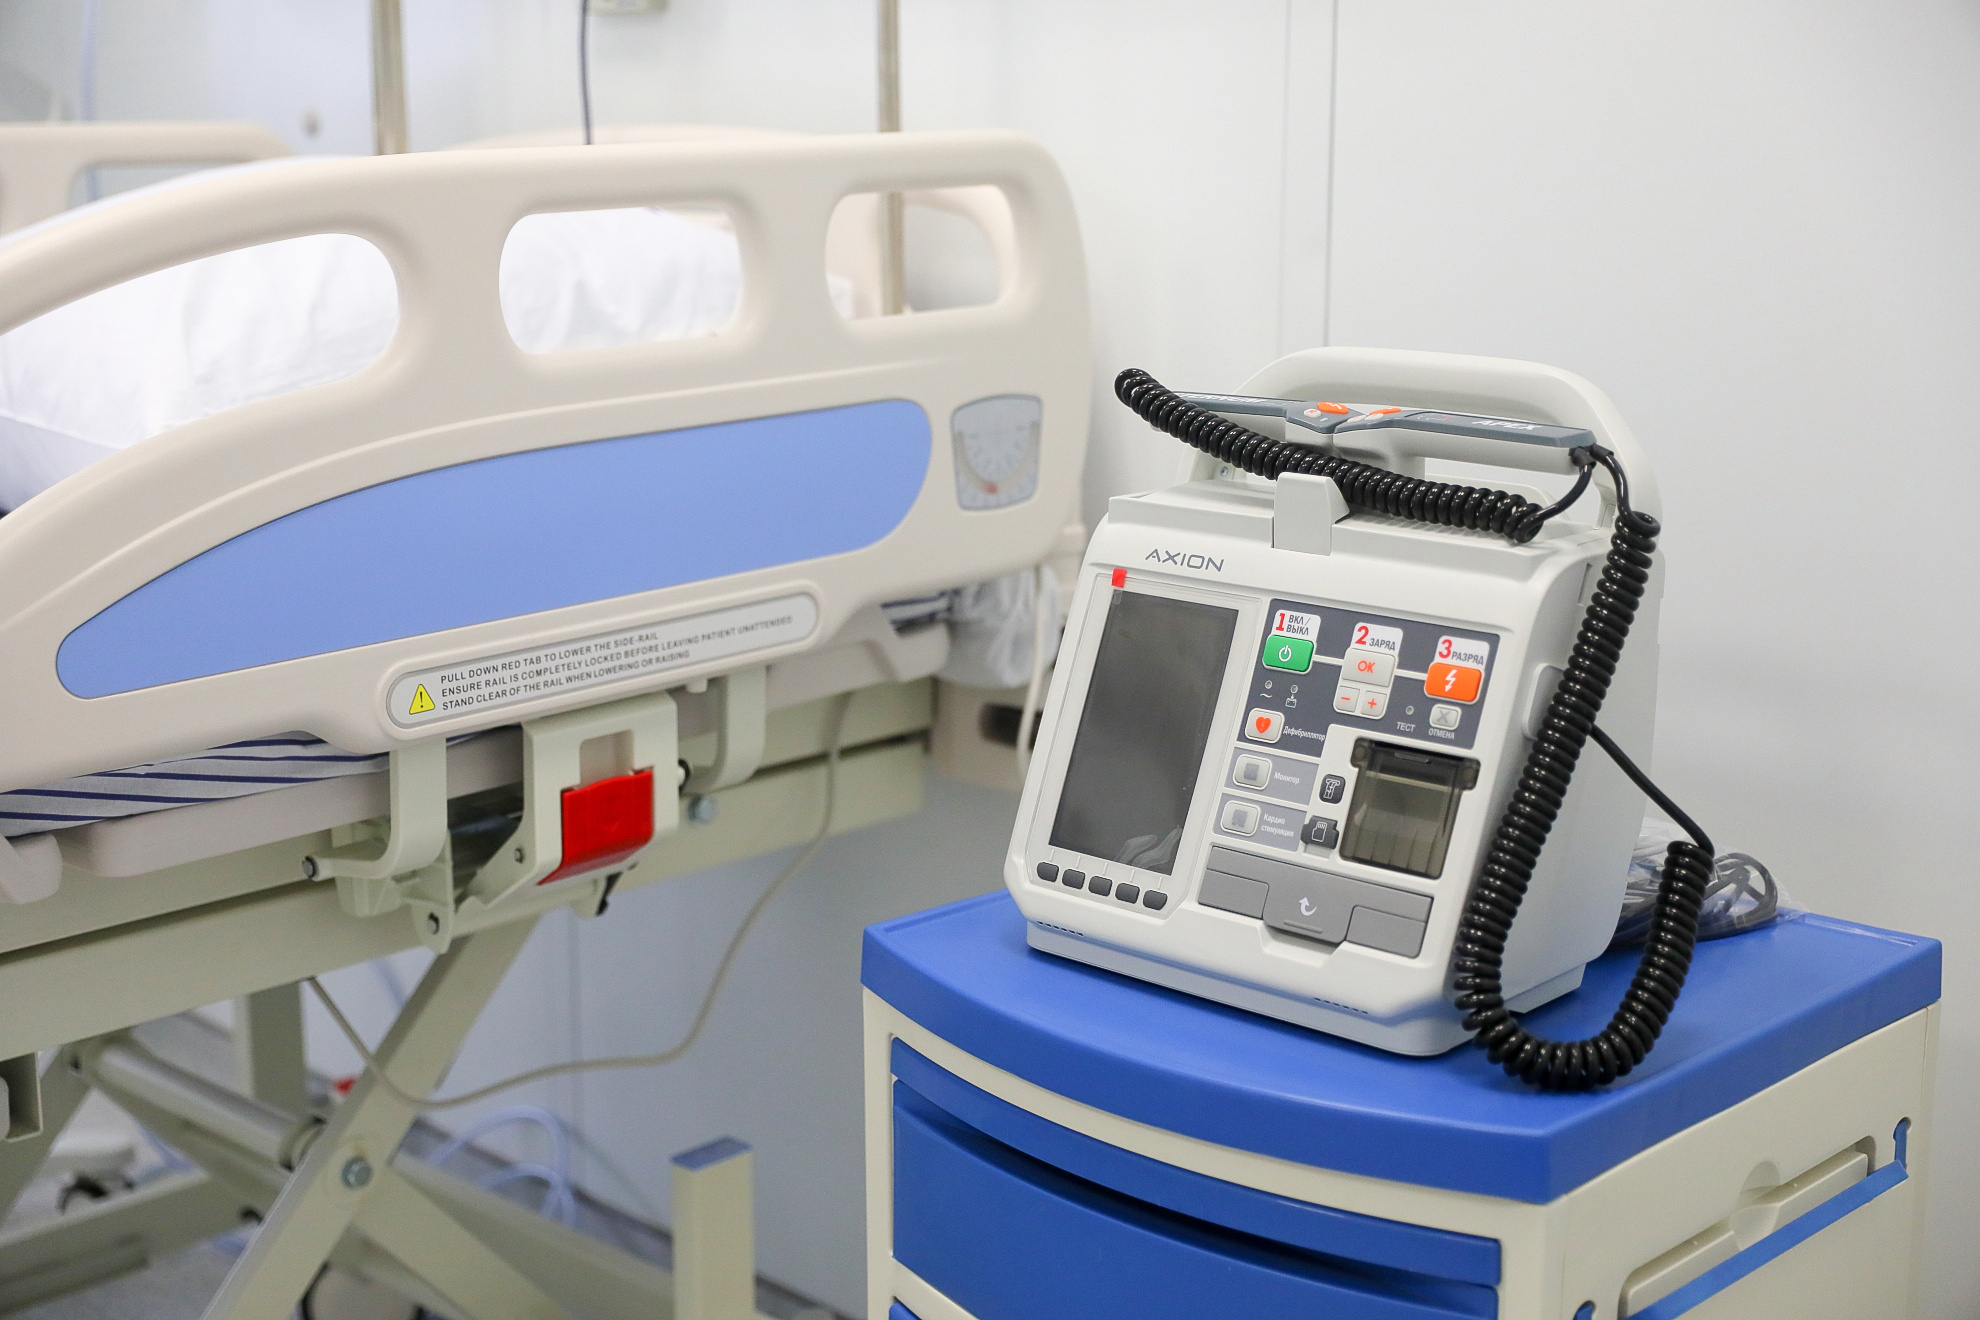 Госпиталь оснащён компьютерными томографами, аппаратами ИВЛ, УЗИ и рентген-оборудованием